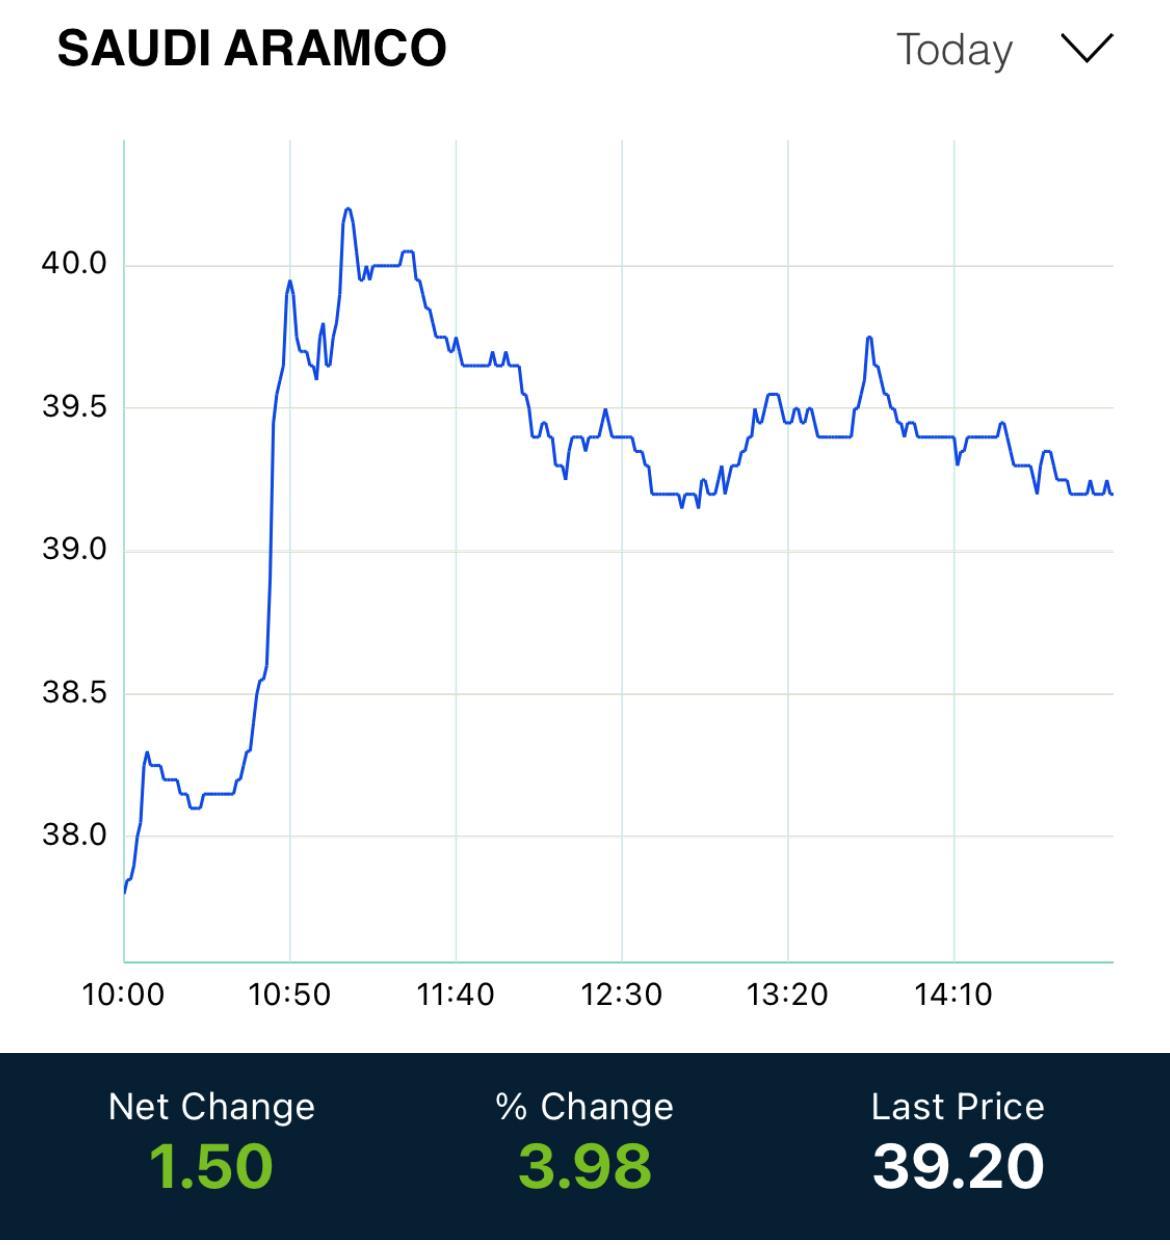 五狱独尊之受国际原油价格攀升等影响 沙特阿美股价创2019年上市以来最高纪录